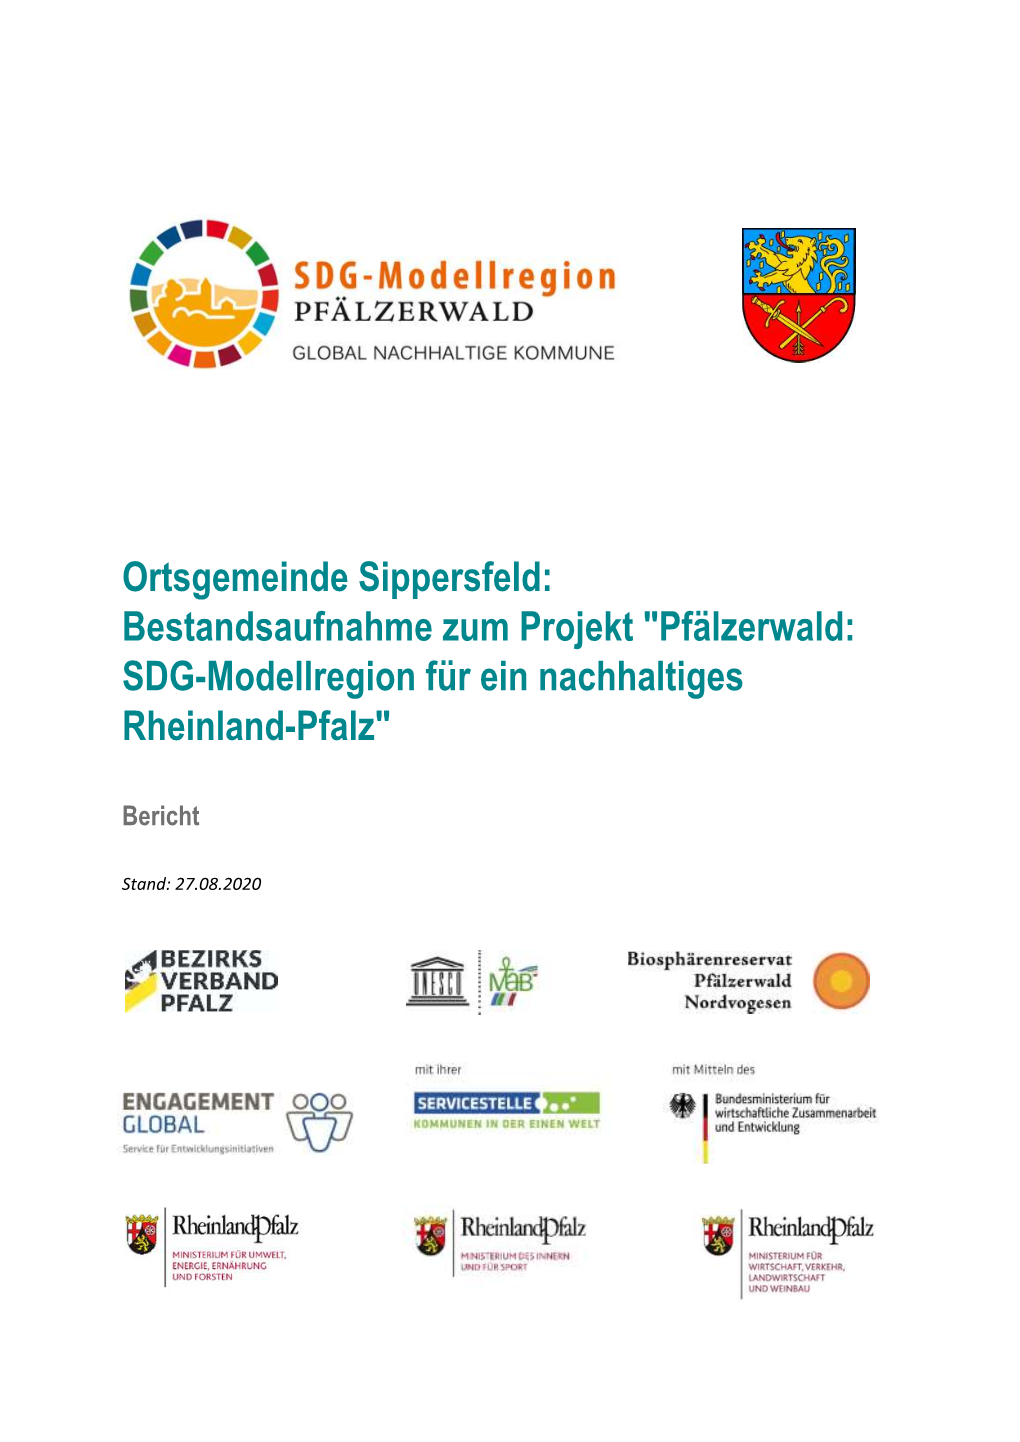 Ortsgemeinde Sippersfeld: Bestandsaufnahme Zum Projekt "Pfälzerwald: SDG-Modellregion Für Ein Nachhaltiges Rheinland-Pfalz"